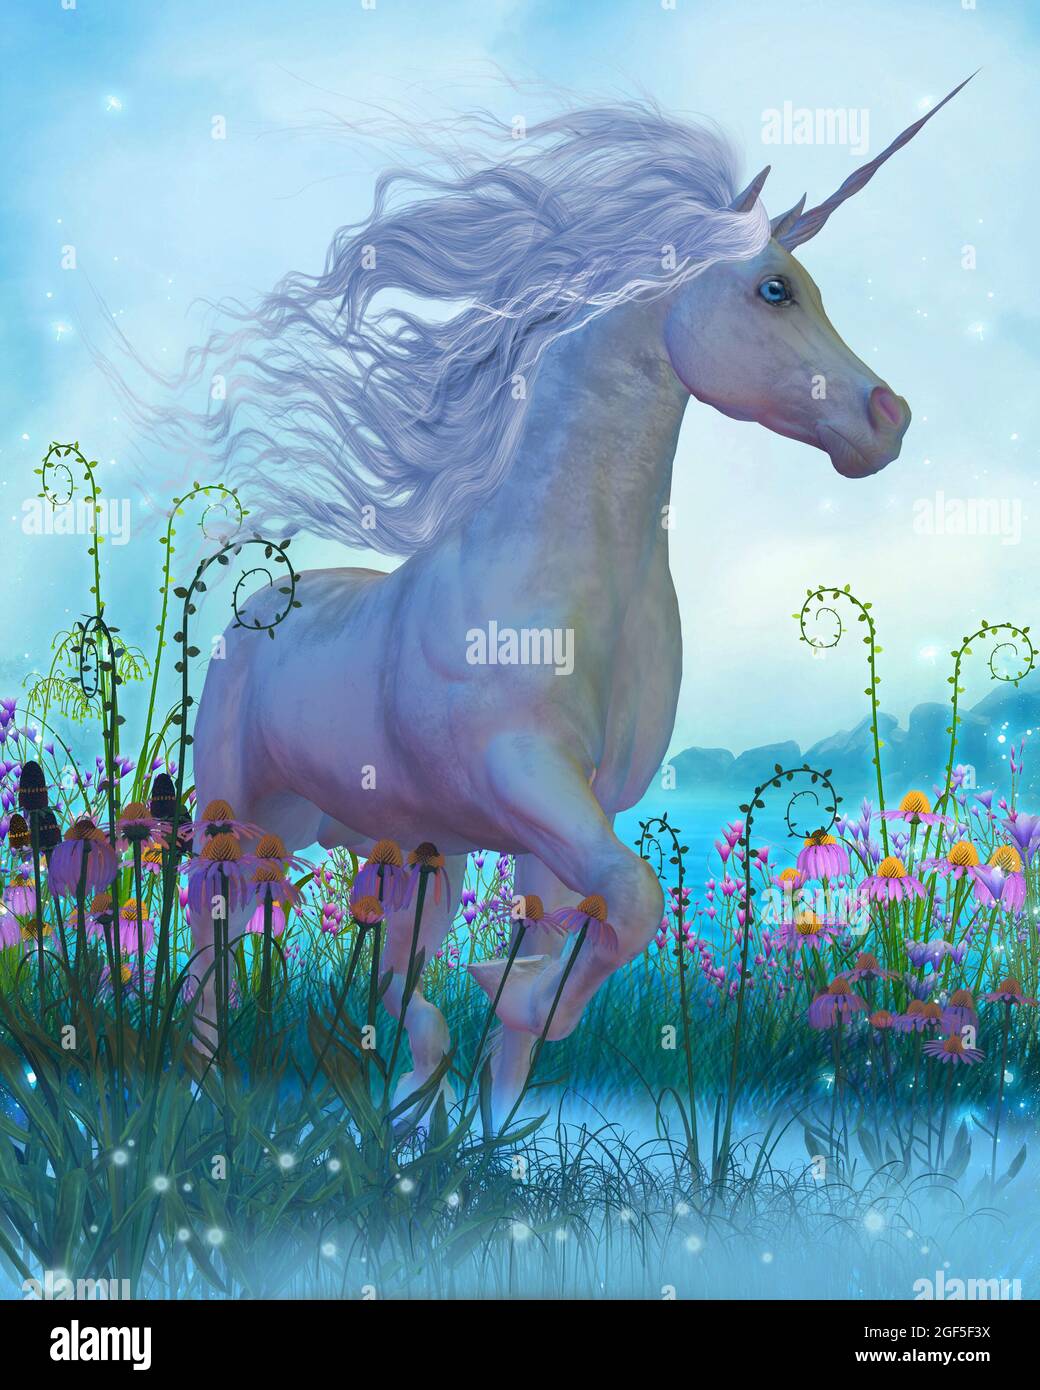 Unicorn Fantasy - A white Unicorn stallion walks through a garden full of flowers and plants. Stock Photo